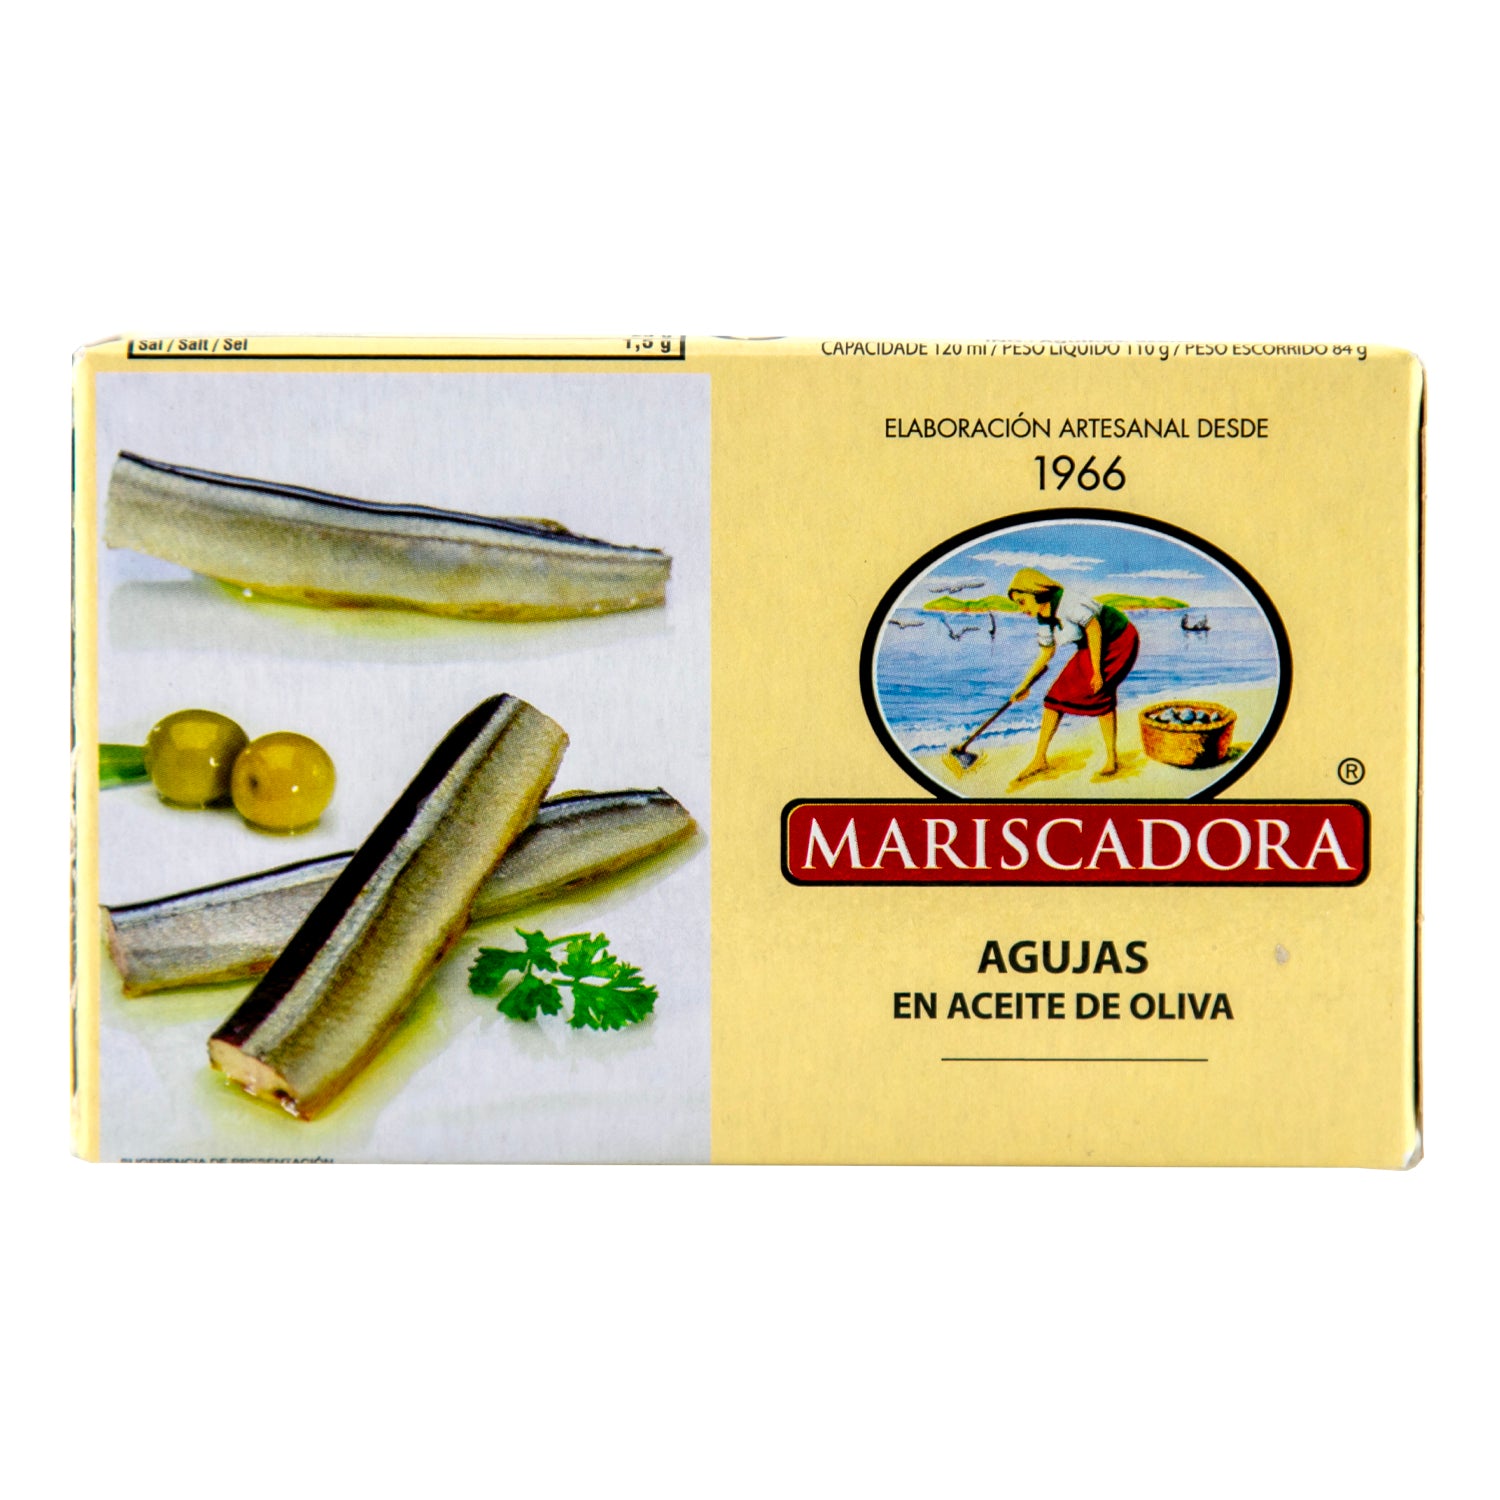 Mariscadora Garfish in olive oil